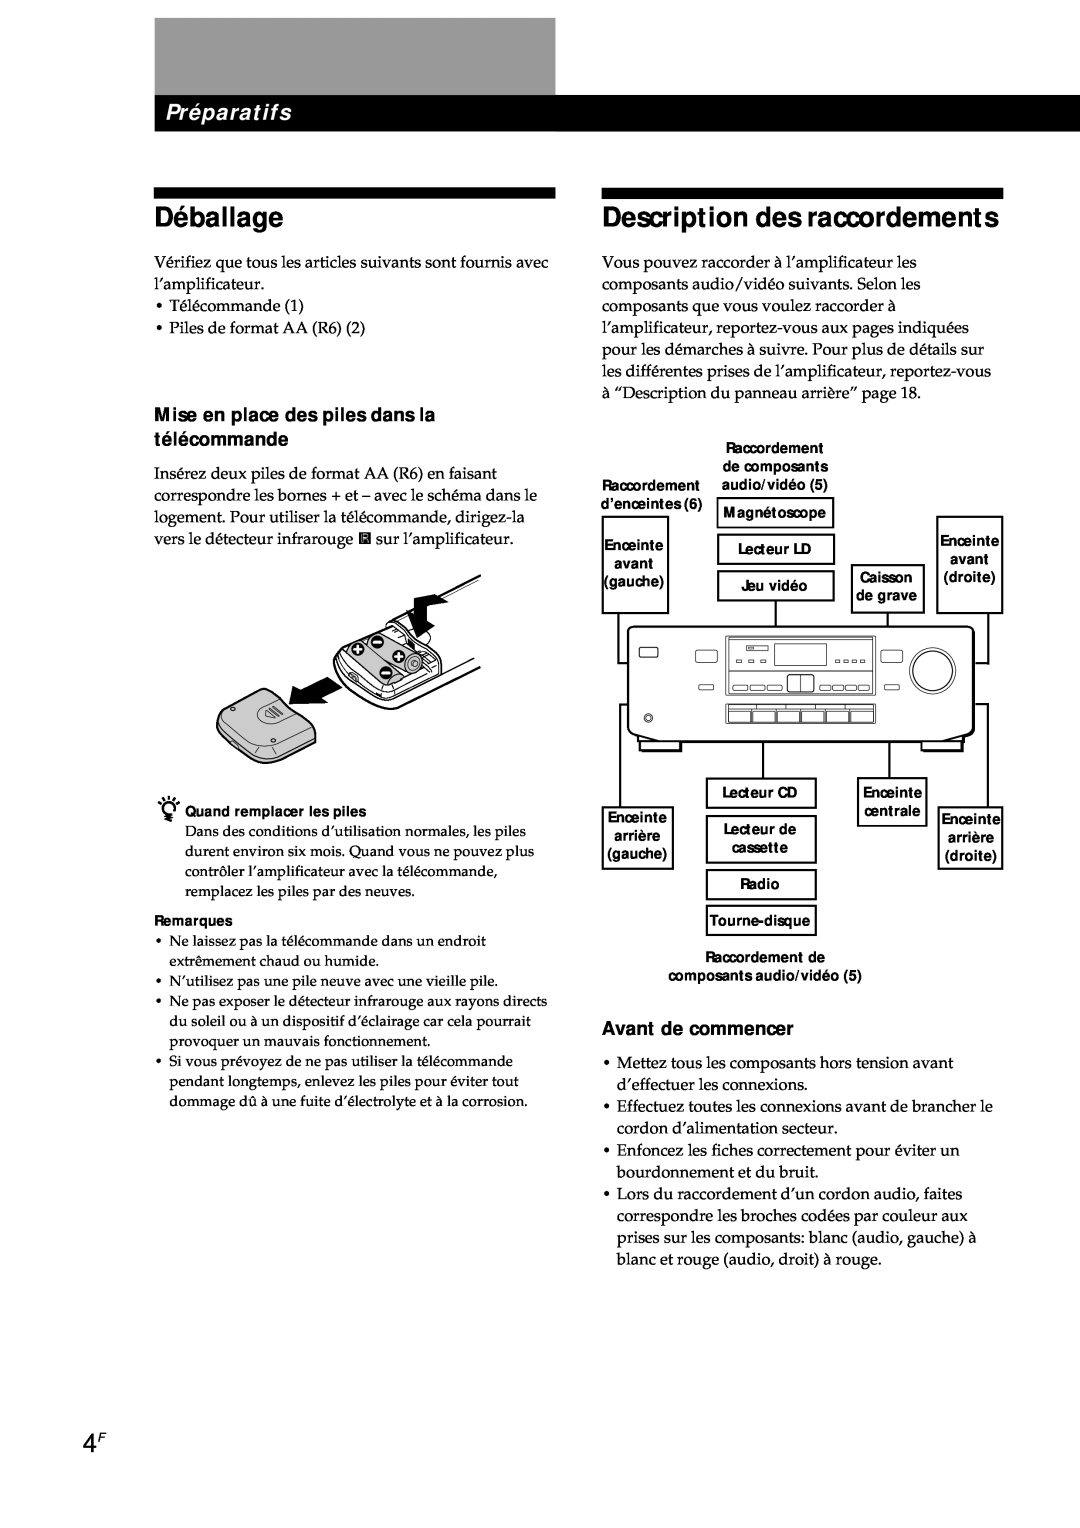 Sony TA-AV561A manual Déballage, Description des raccordements, Préparatifs, Mise en place des piles dans la télécommande 